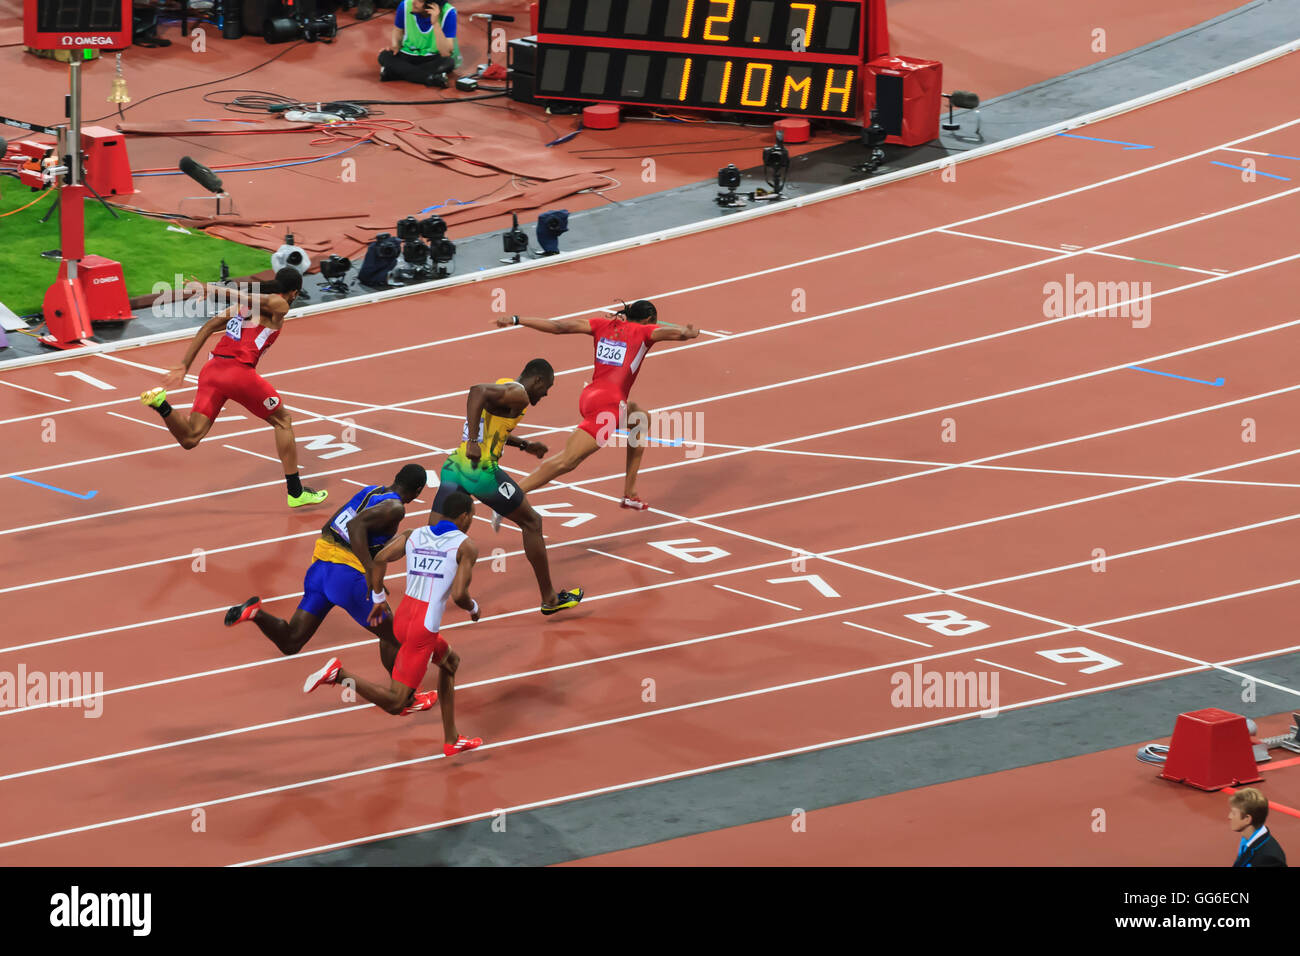 Aries Merritt, Stati Uniti, attraversa la linea di arrivo, gli Uomini 110m Hurdles Finale, Stadium, Londra 2012, Giochi Olimpici di Londra, Regno Unito Foto Stock